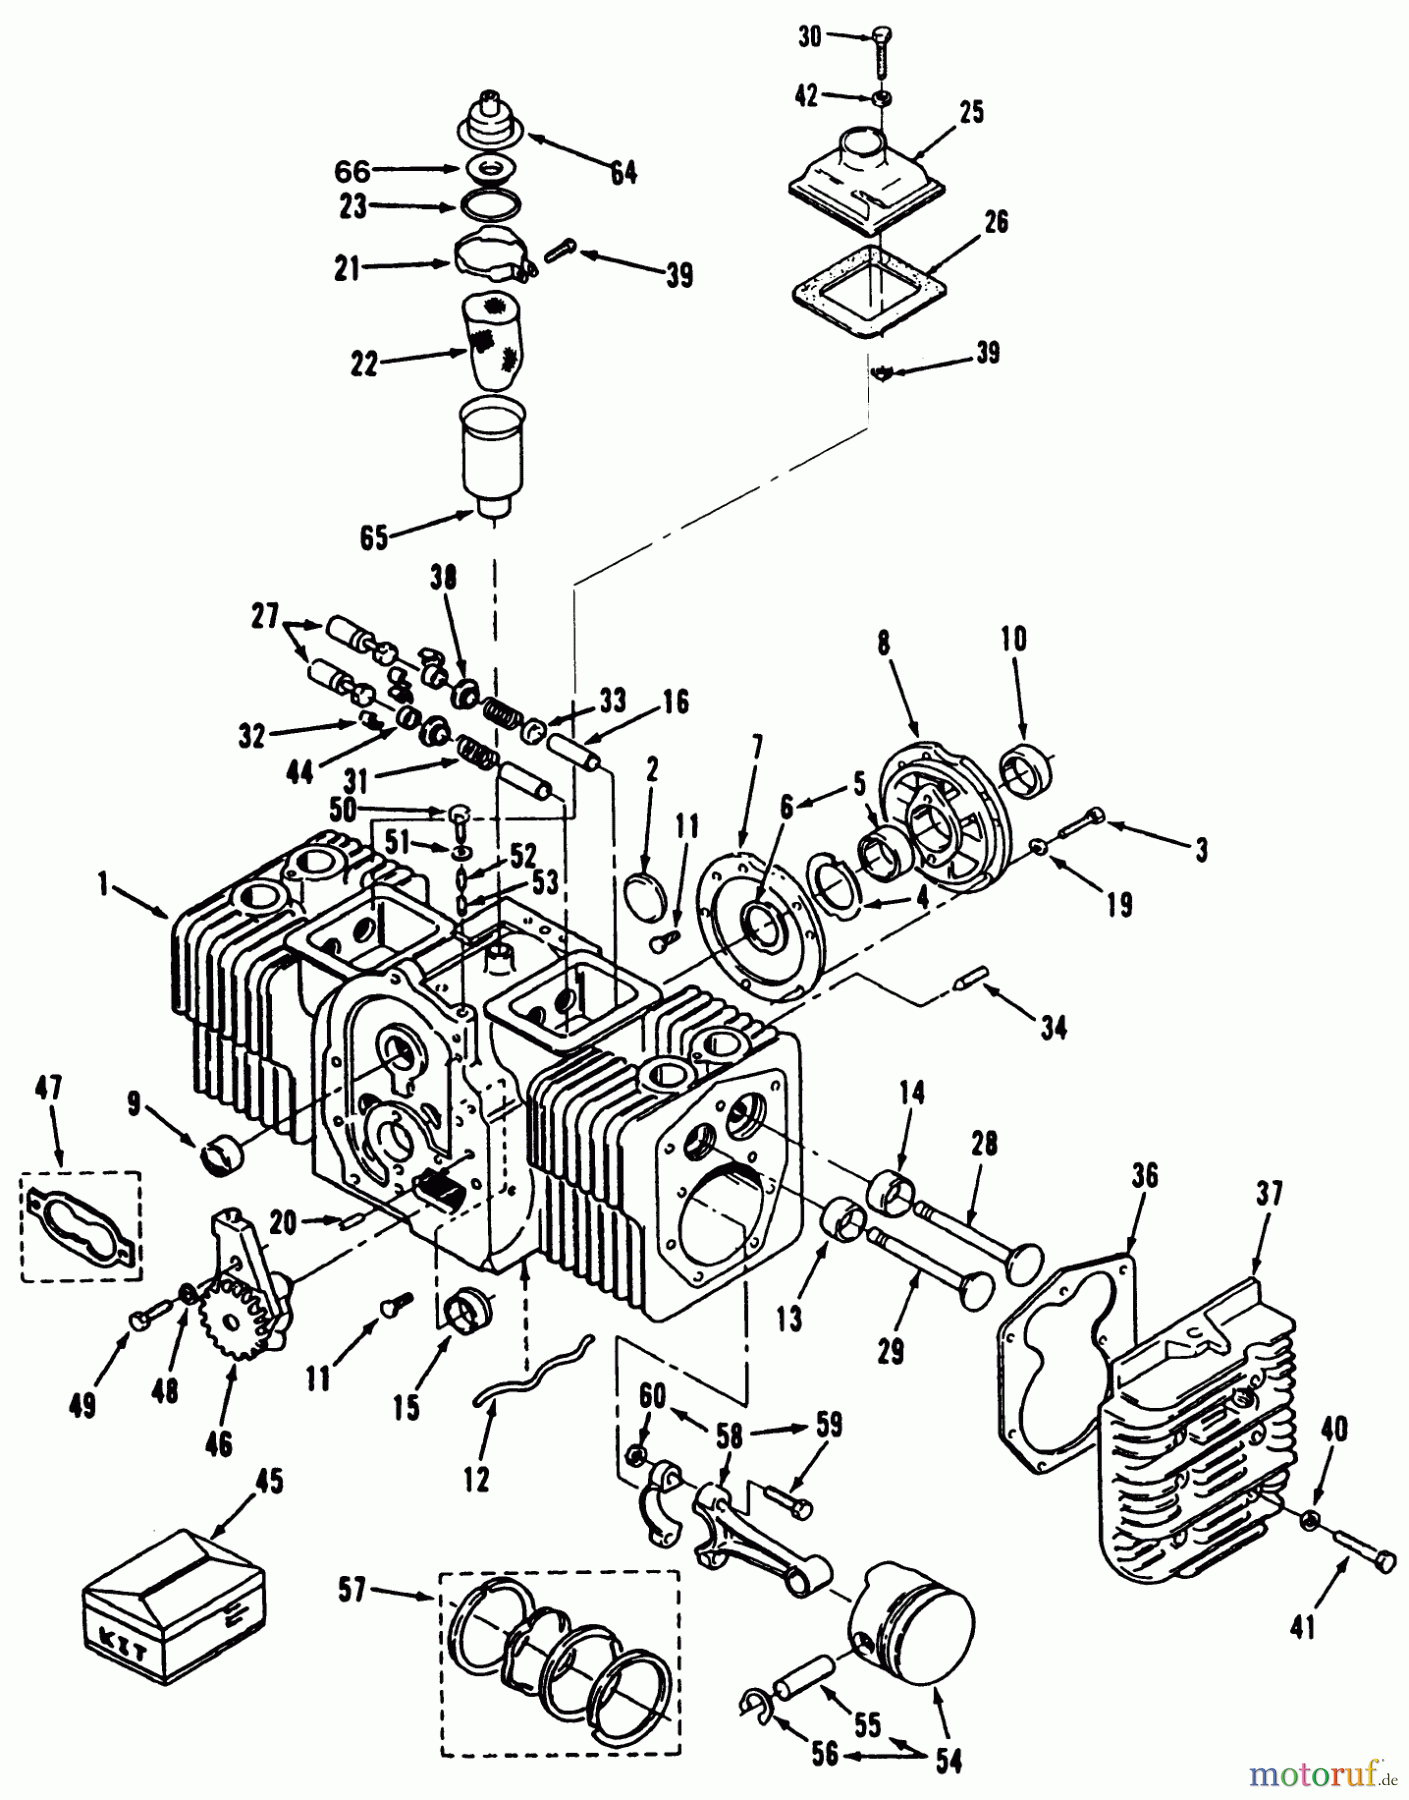  Toro Neu Mowers, Lawn & Garden Tractor Seite 1 31-16O804 (416-8) - Toro 416-8 Garden Tractor, 1992 (2000001-2999999) ENGINE POWER PLUS CYLINDER BLOCK